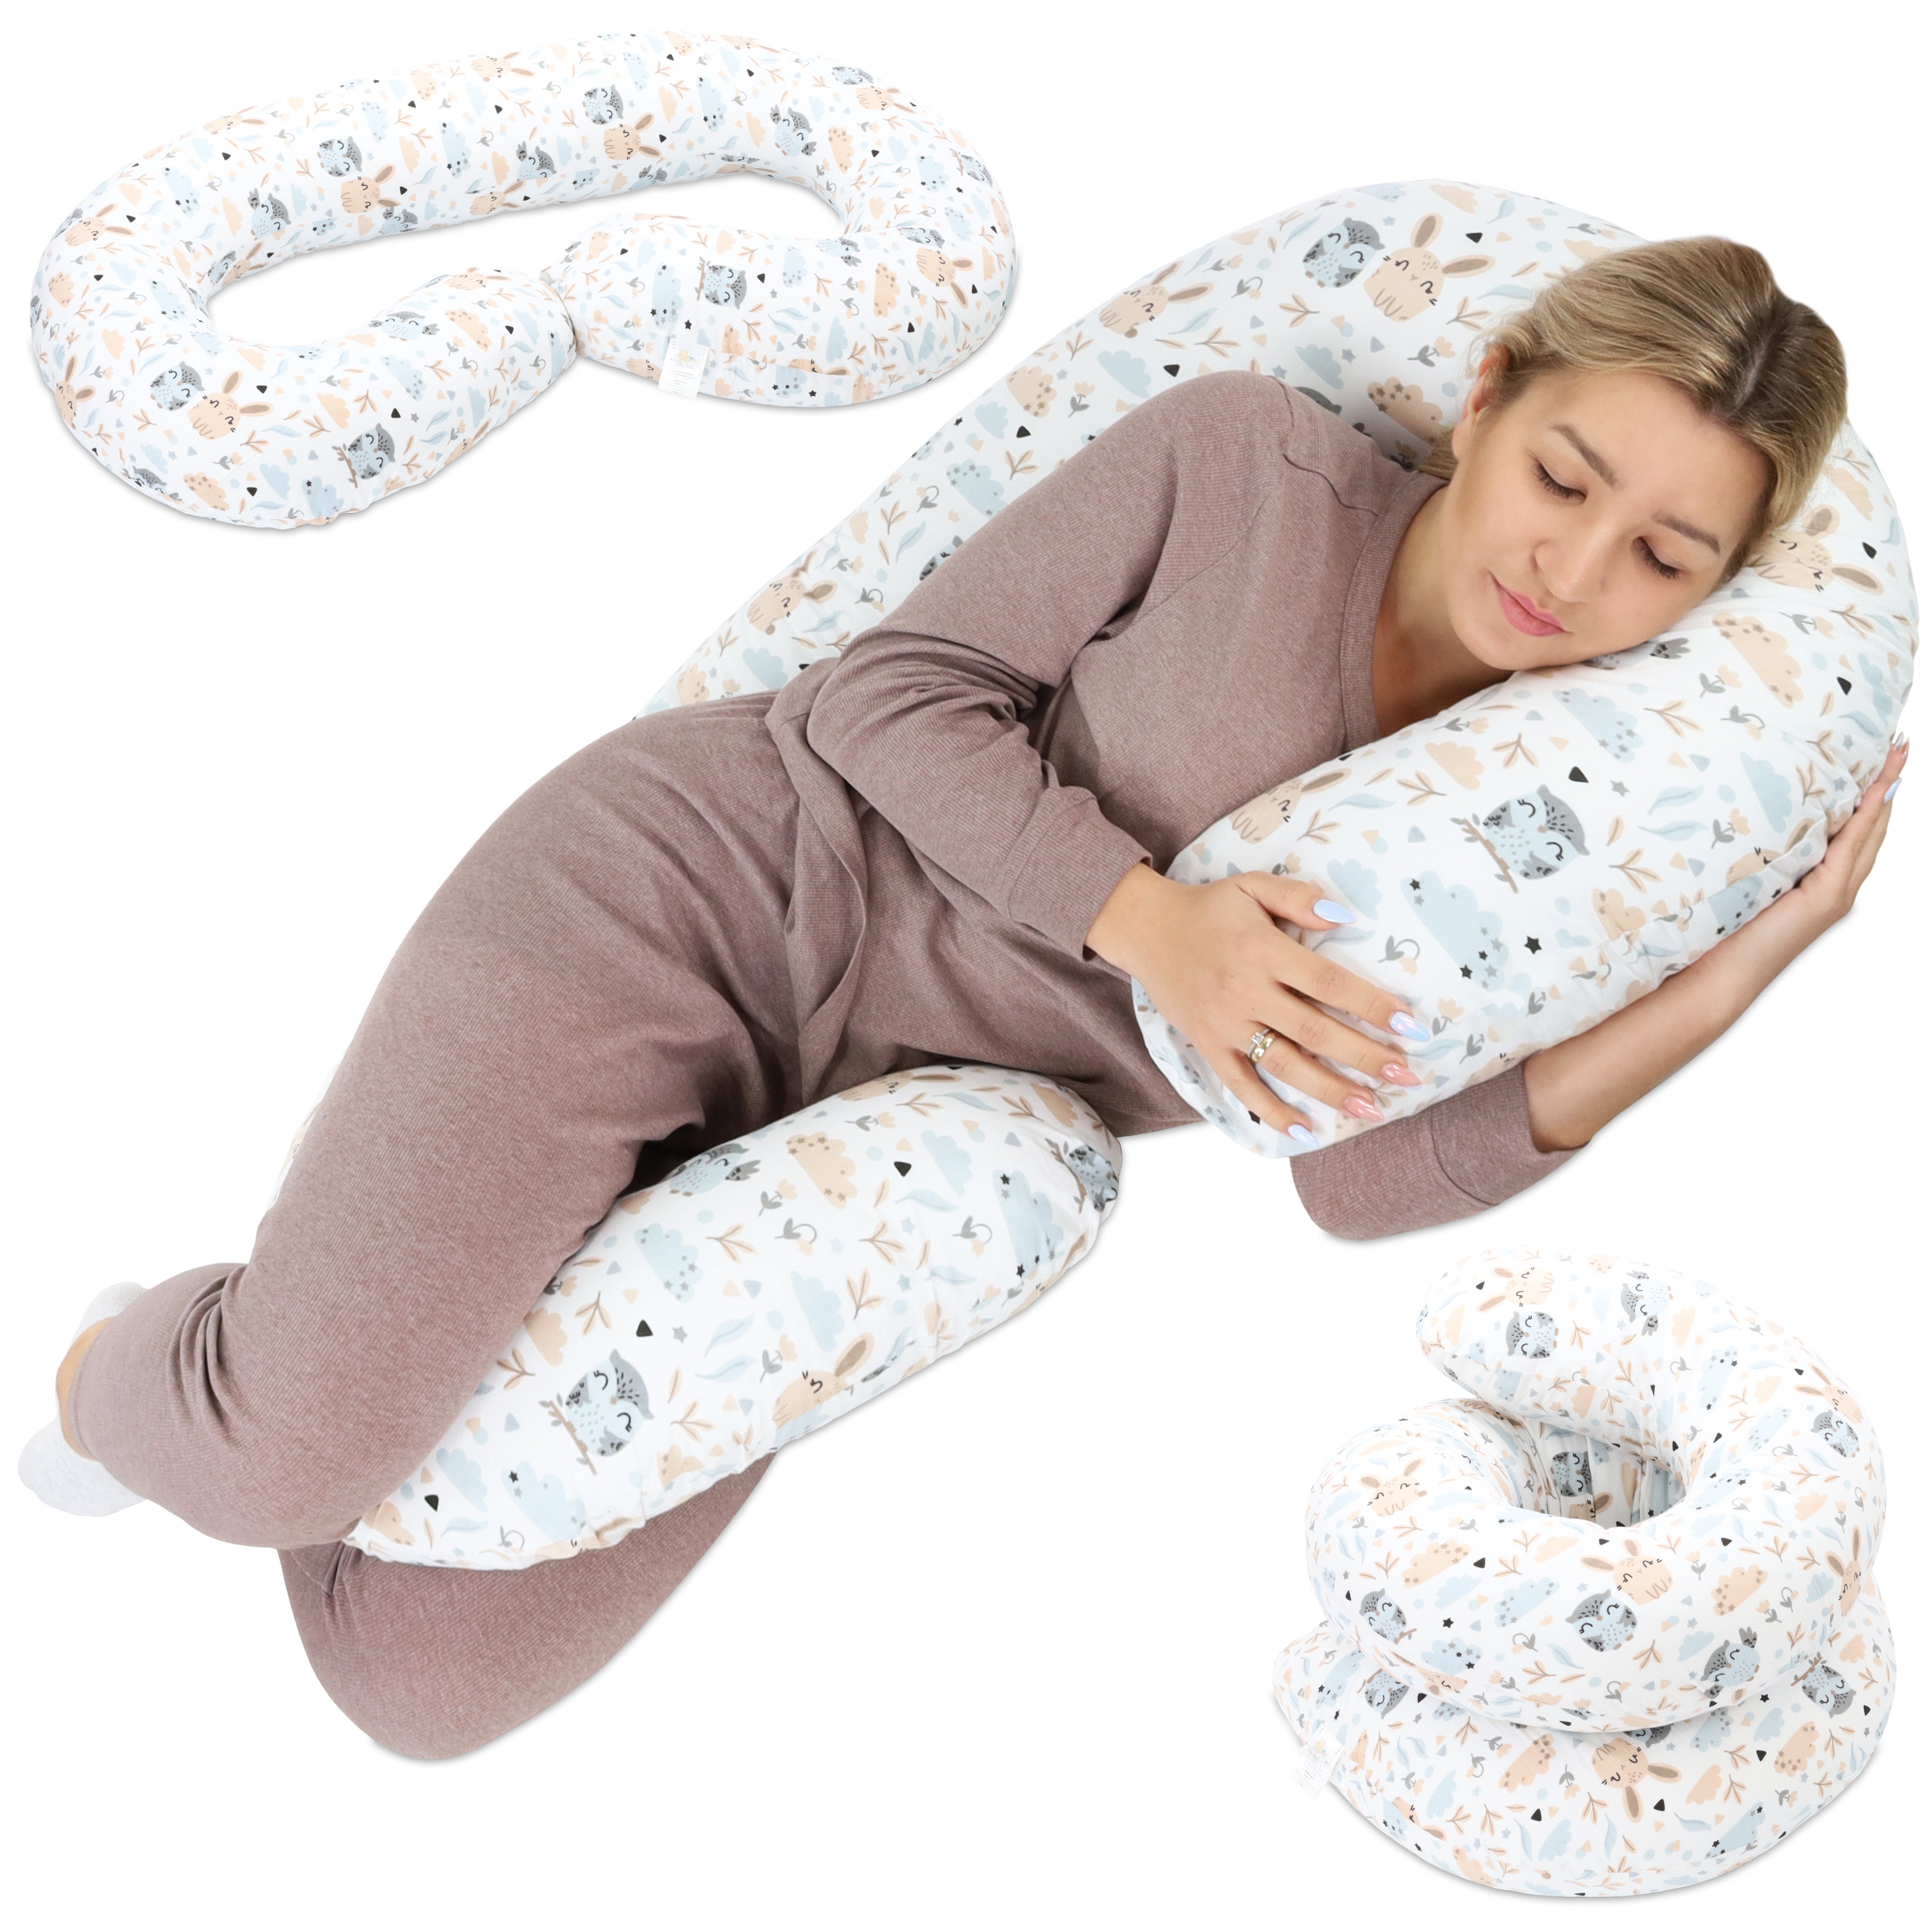 Oreiller de couchage latéral multifonctionnel pour femme enceinte